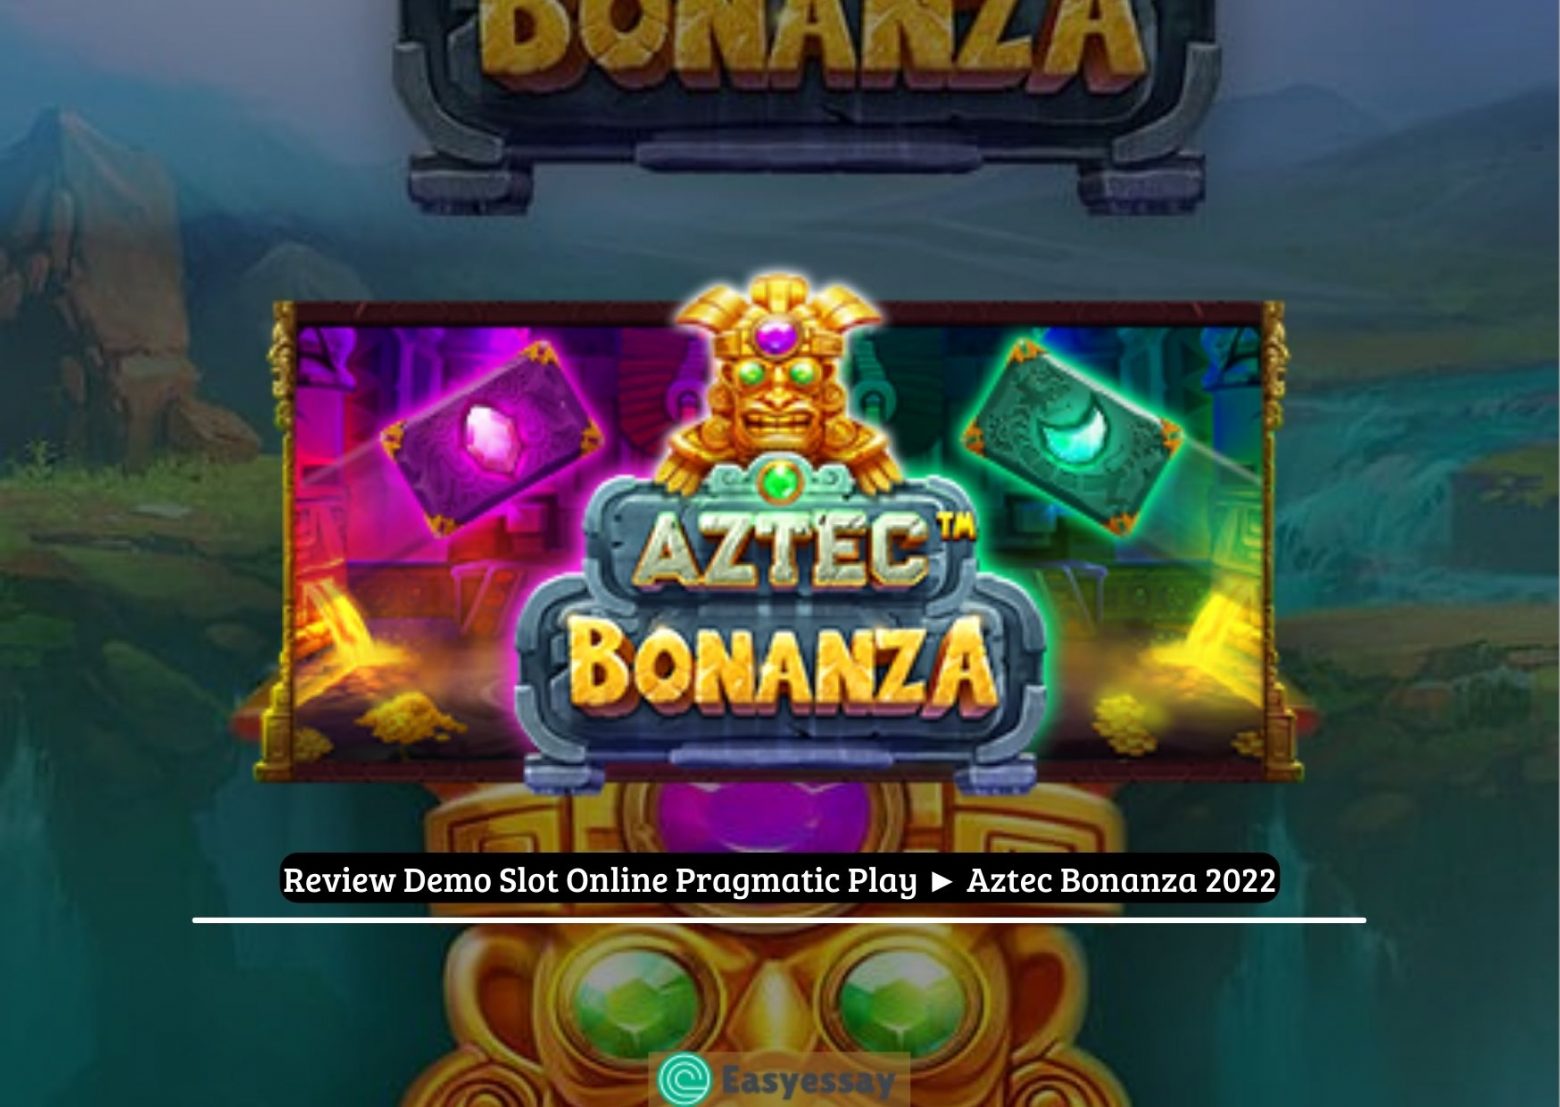 Review Demo Slot Online Pragmatic Play ► Aztec Bonanza 2022